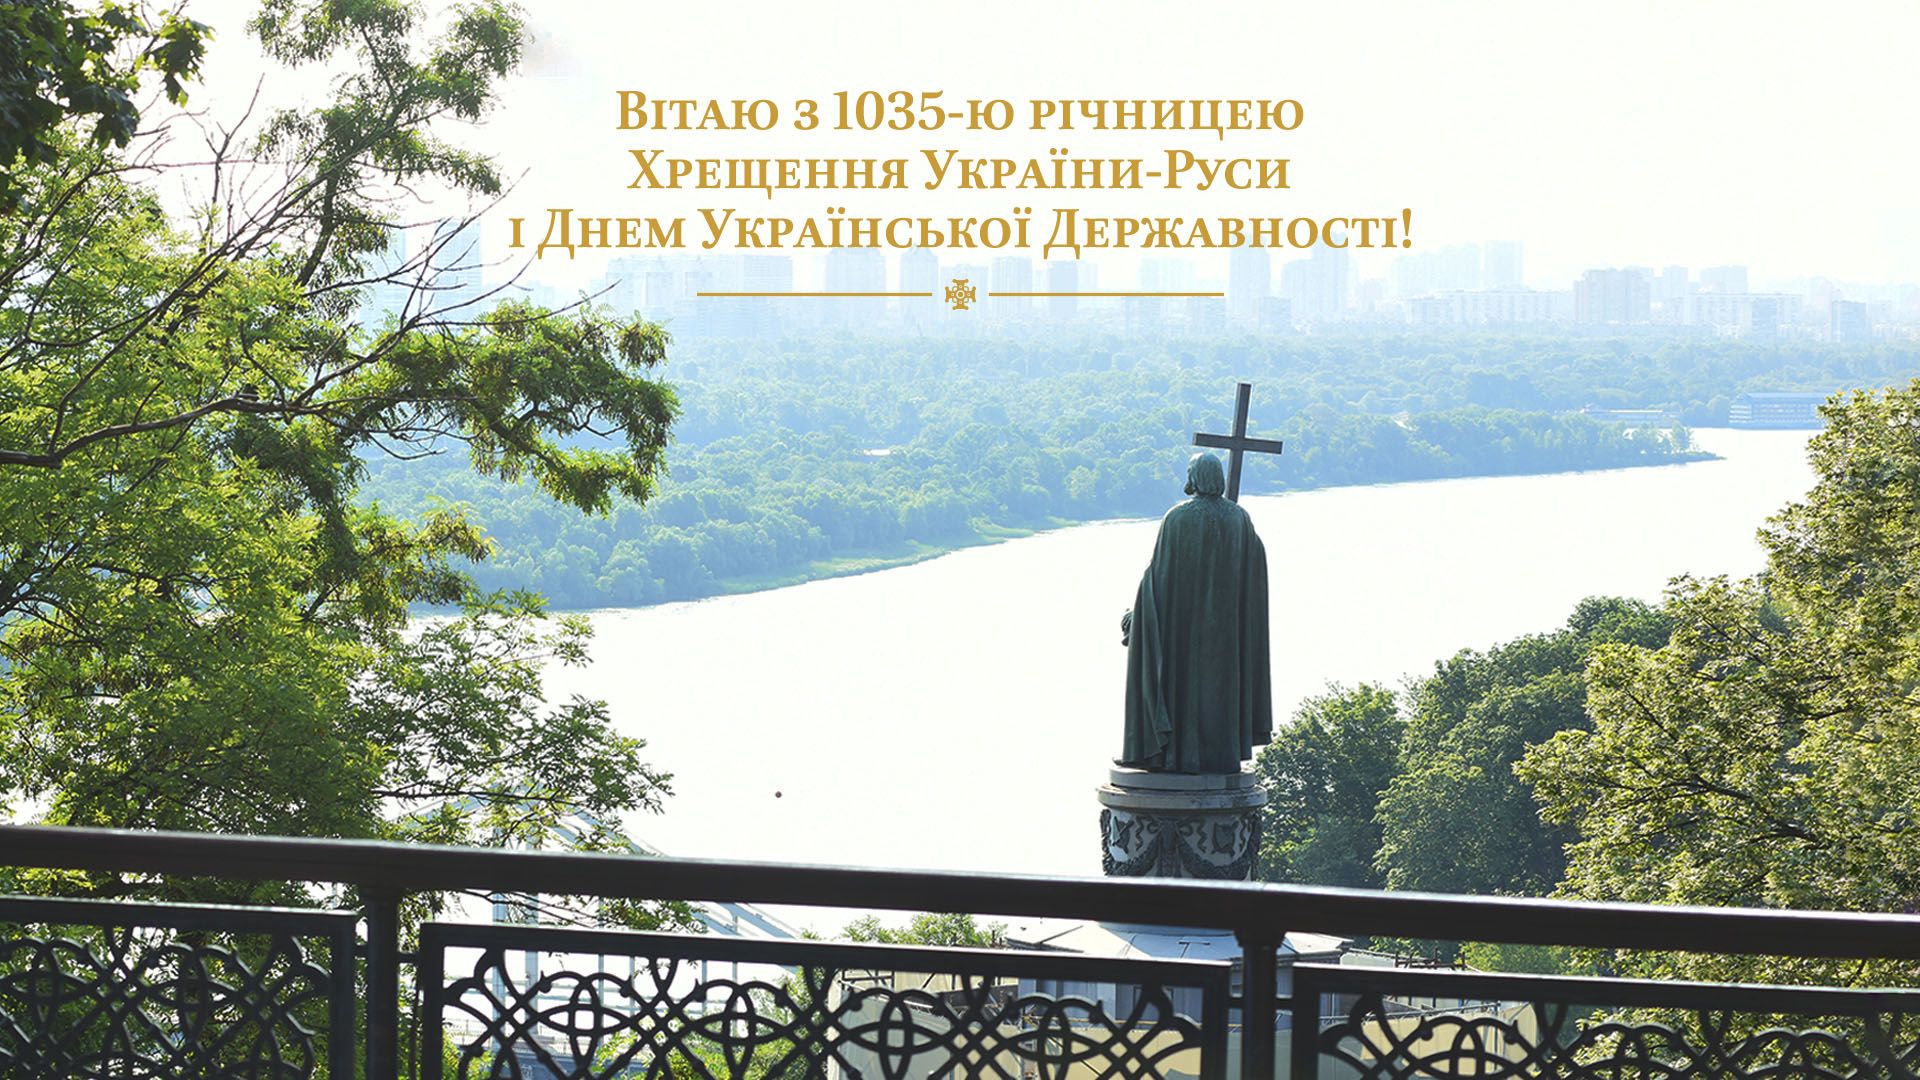 Митрополит Епіфаній привітав українців з 1035-ю річницею Хрещення України-Руси.